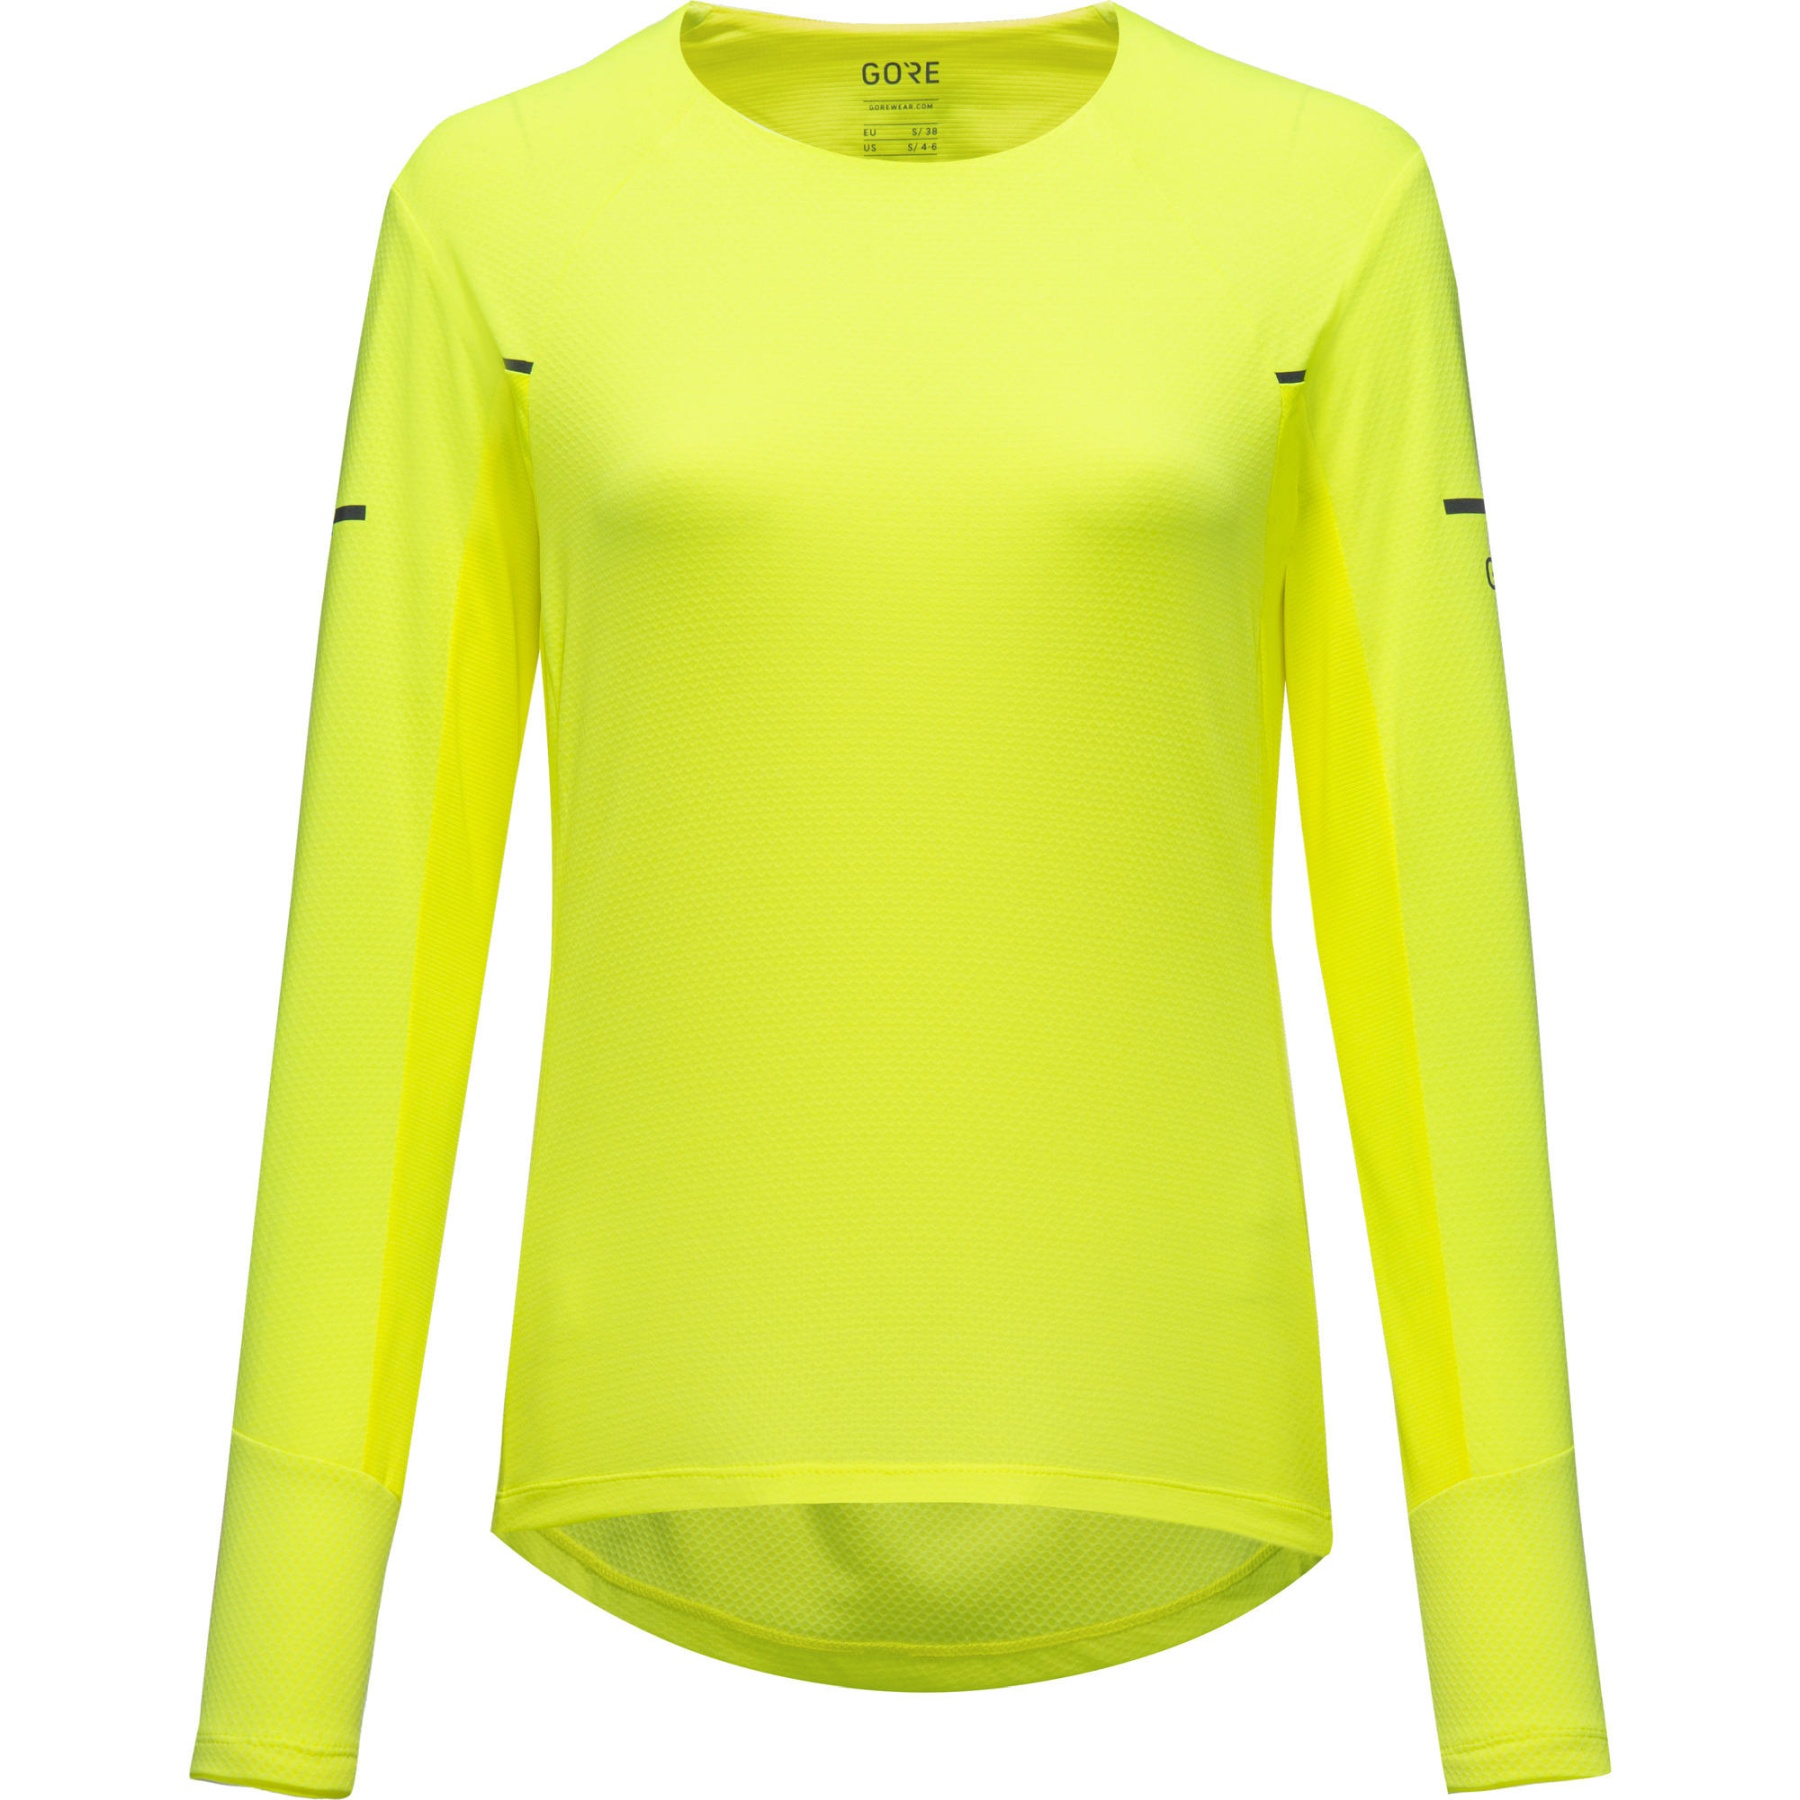 Produktbild von GOREWEAR Vivid Langarmlaufshirt Damen - neon yellow 0800